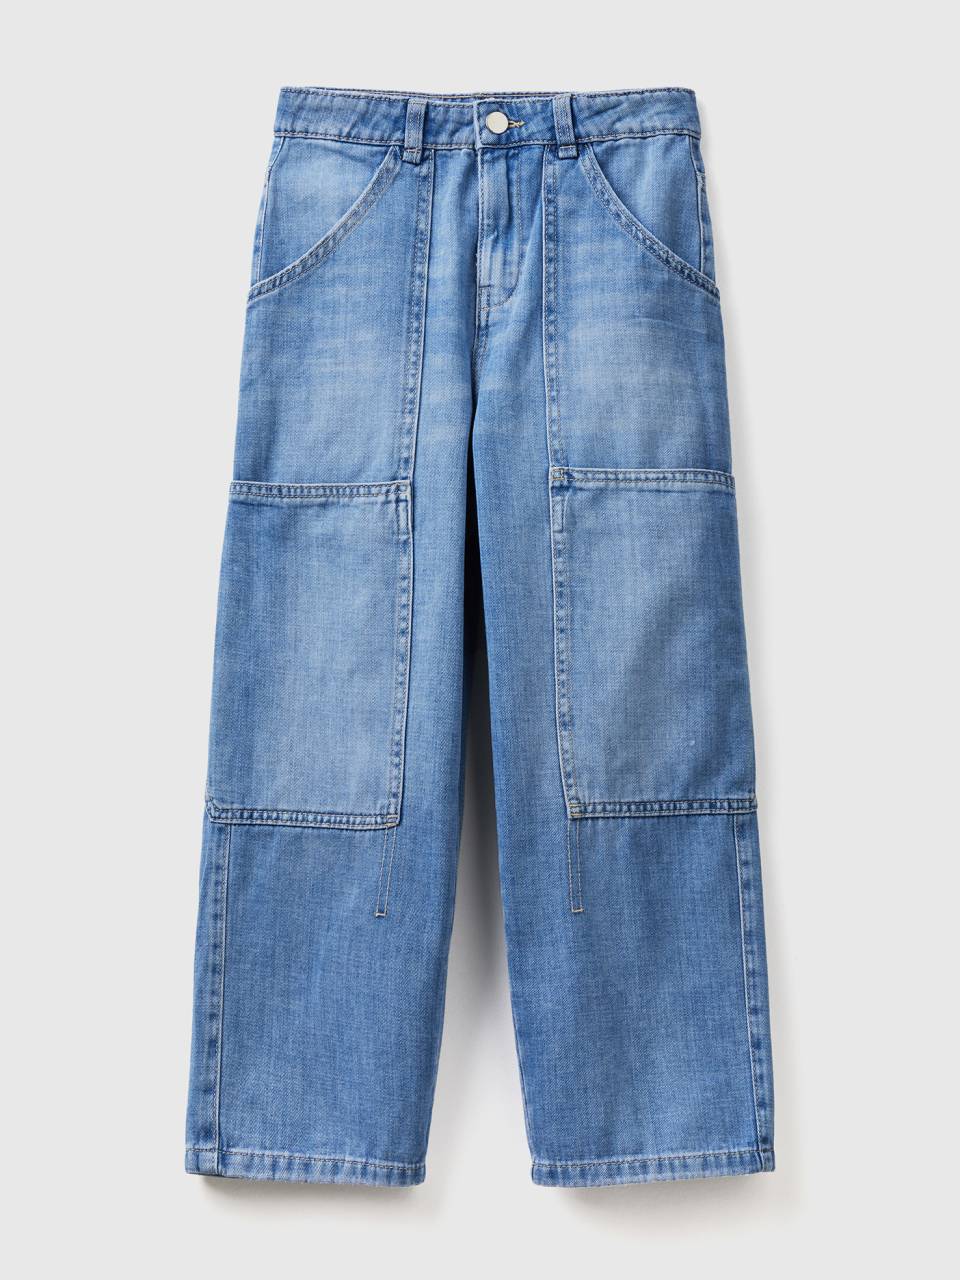 Benetton wide leg cargo jeans. 1